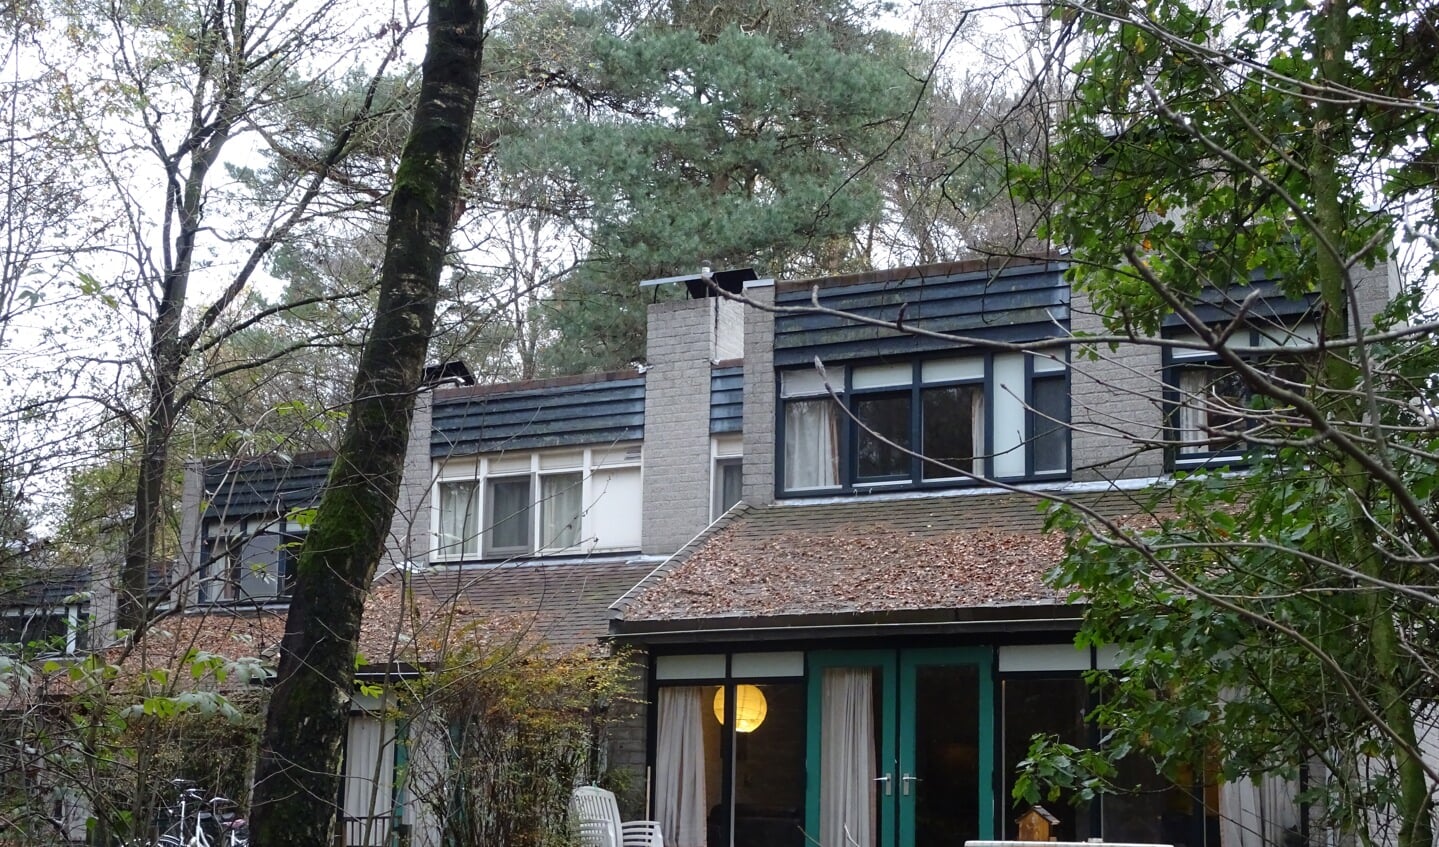 De meeste vakantiehuisjes op Het Roekenbosch worden binnenkort bewoond door asielzoekers. 